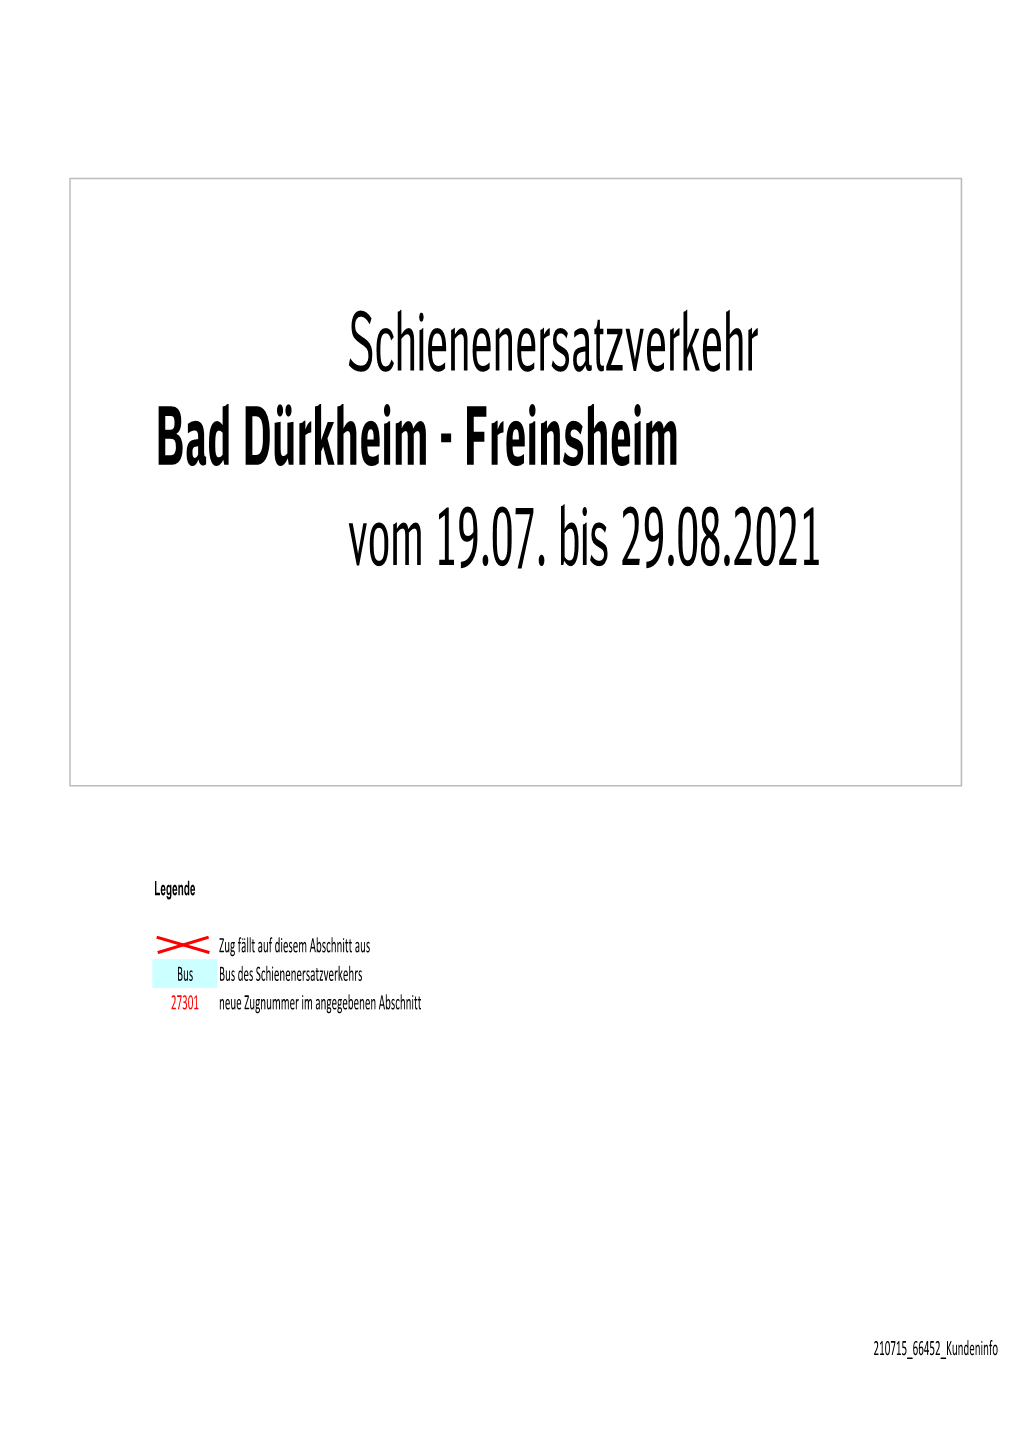 Schienenersatzverkehr Bad Dürkheim - Freinsheim Vom 19.07